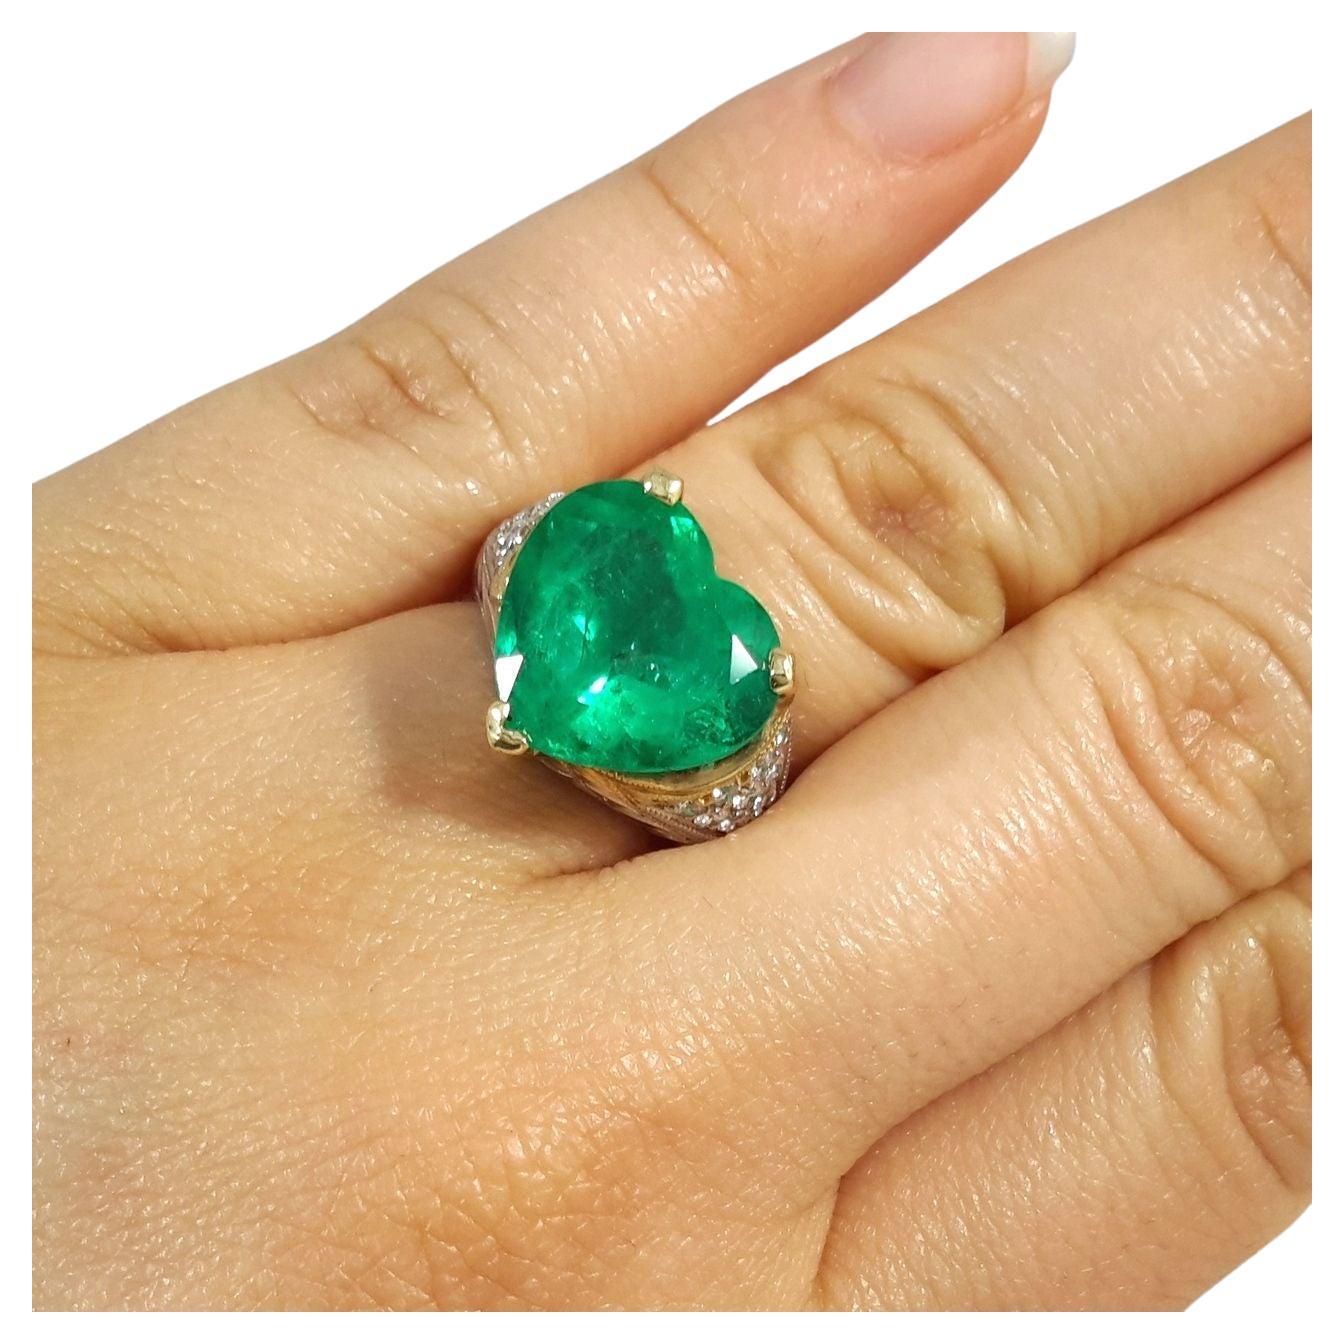 18K Zweifarbiger Herzförmiger Smaragd-Diamant-Ring!

Lassen Sie sich von unserem exquisiten zweifarbigen 18-karätigen Smaragd-Diamantring in Herzform verführen, einer perfekten Mischung aus Raffinesse und zeitloser Eleganz.

Ring Highlights:
Metall: